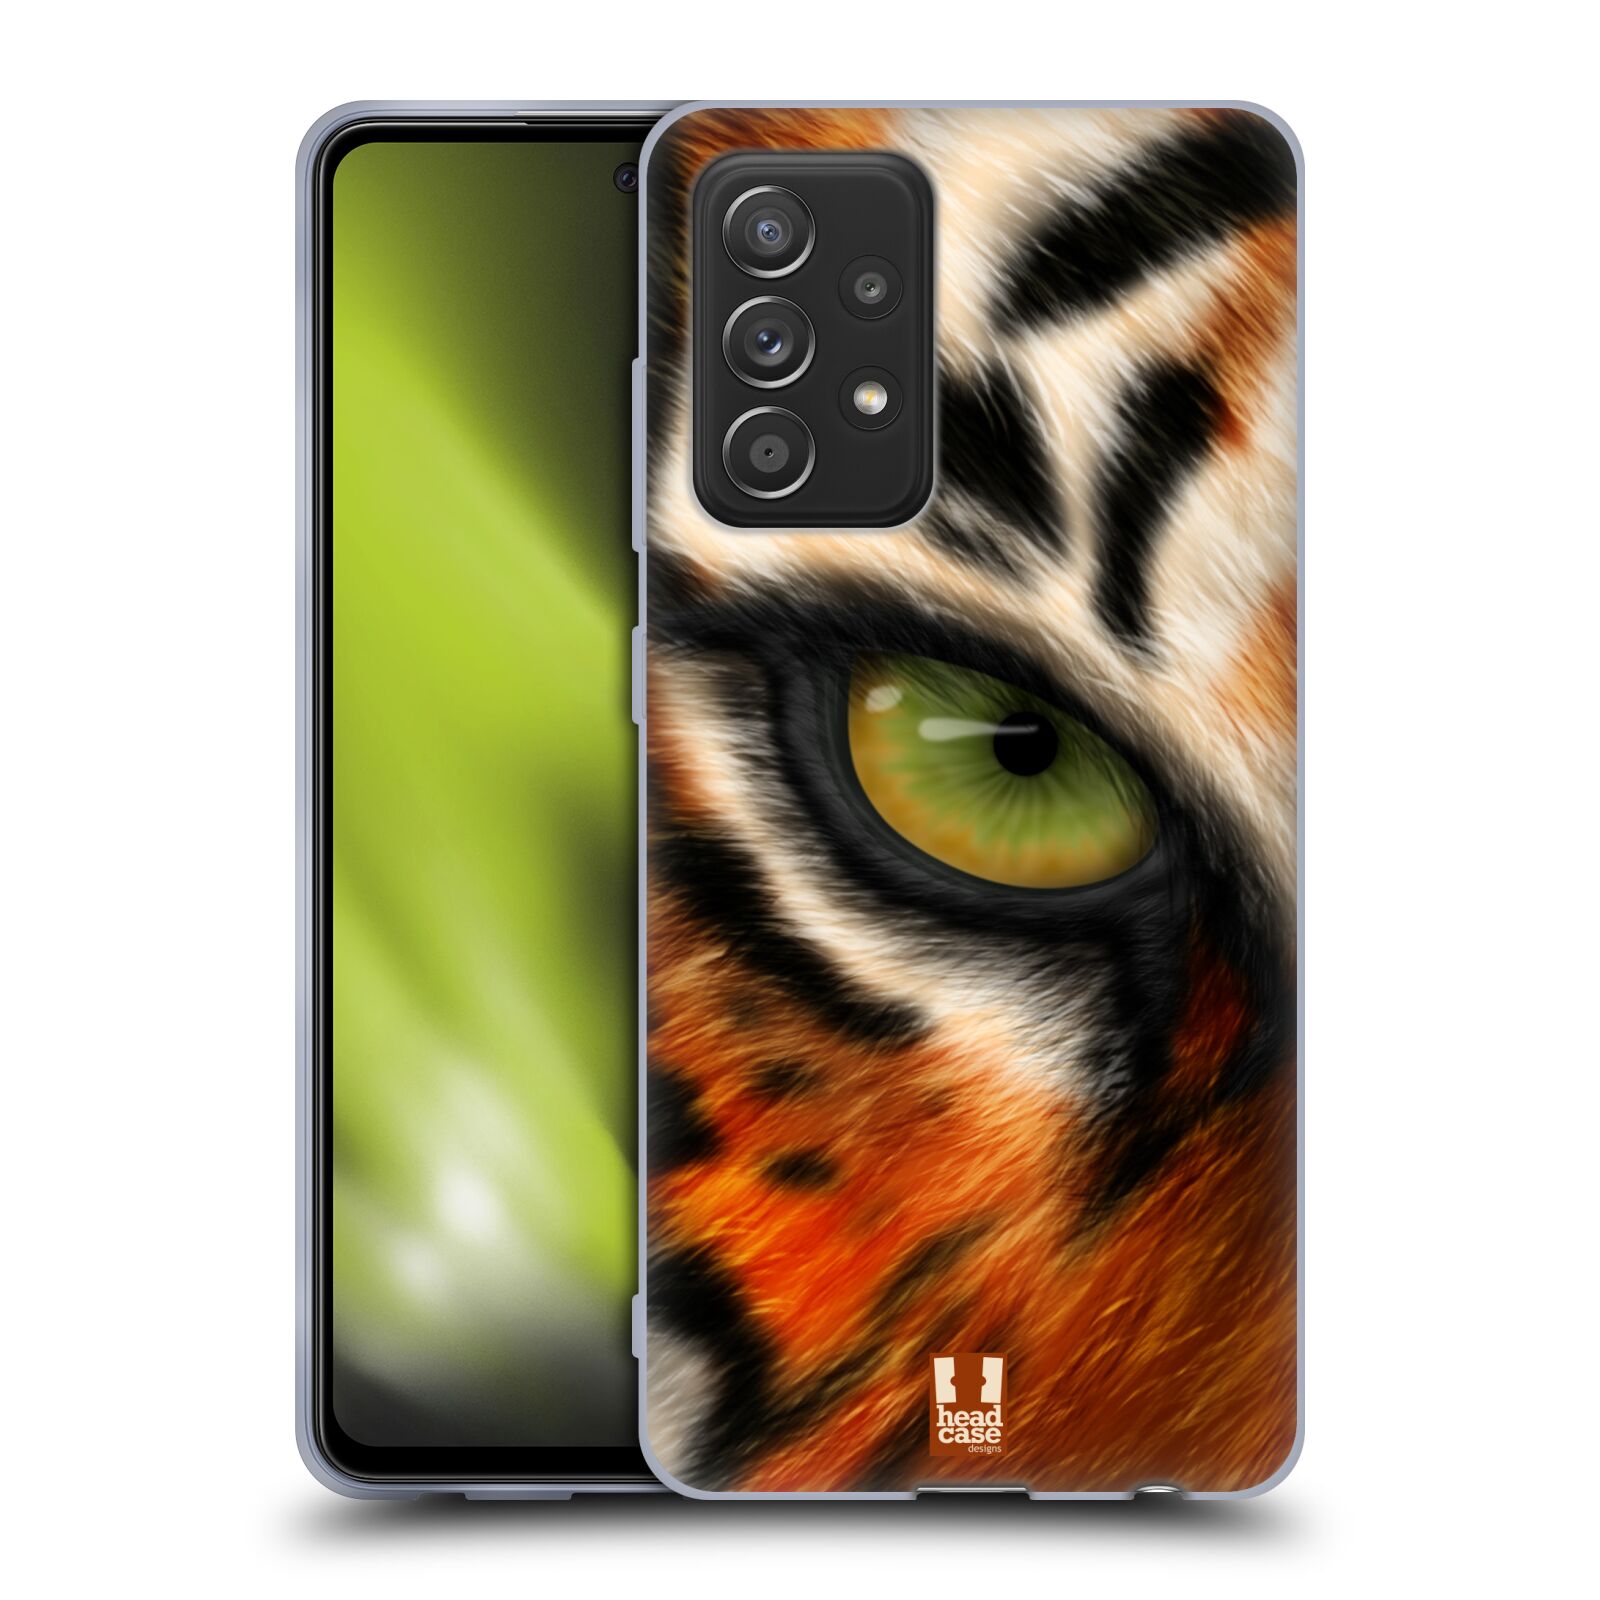 Plastový obal HEAD CASE na mobil Samsung Galaxy A52 / A52 5G / A52s 5G vzor pohled zvířete oko tygr